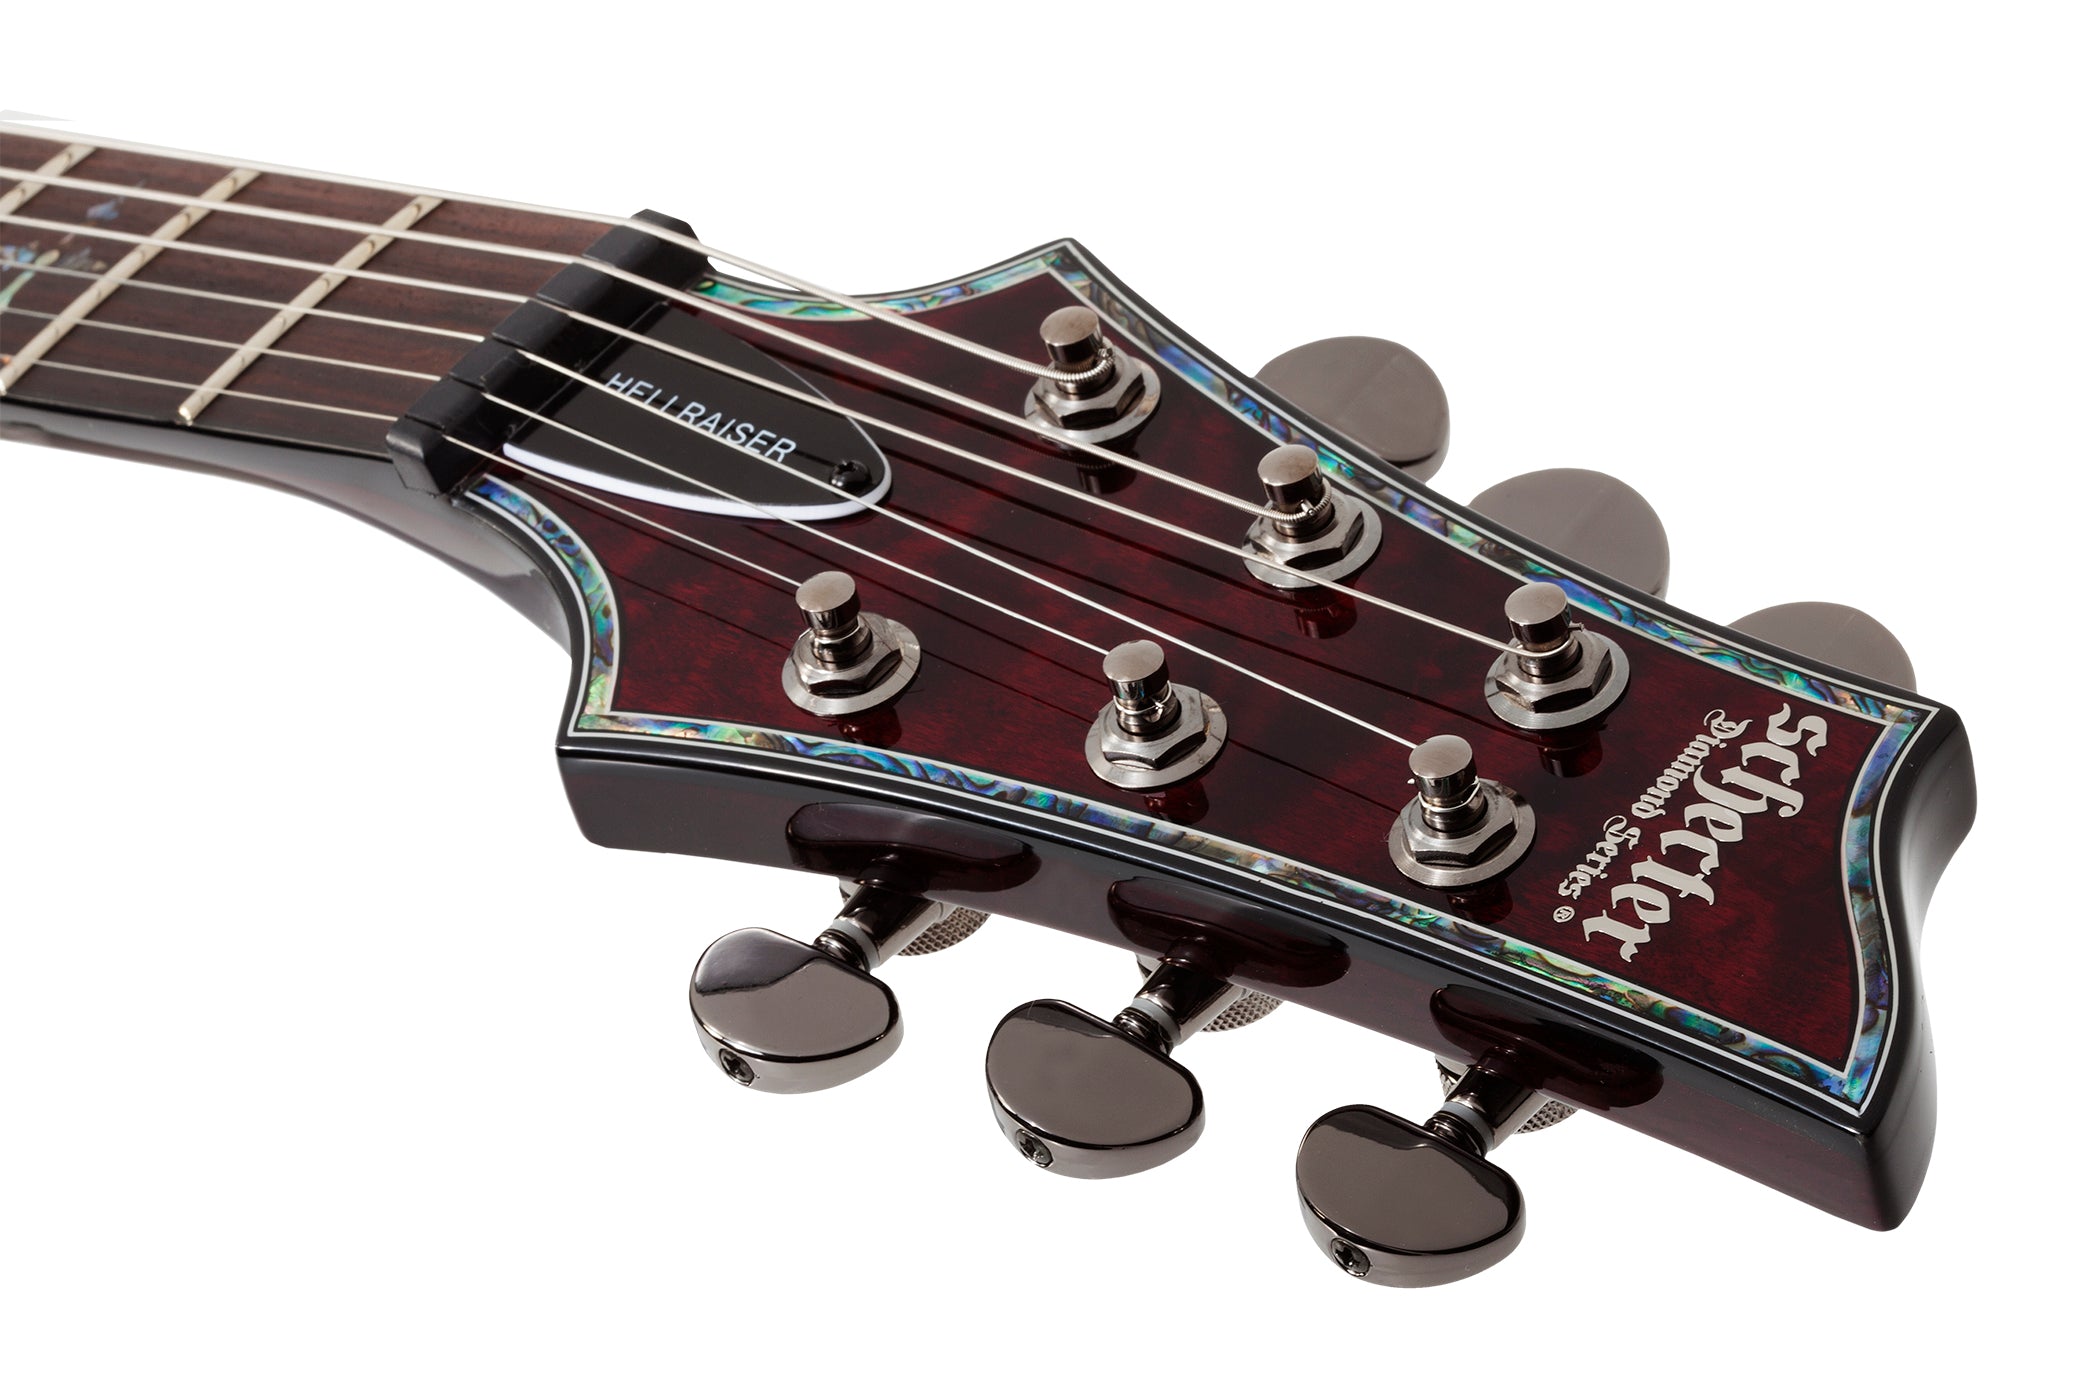 Schecter Hellraiser Series C-1-HR-BCH Black Cherry Guitar with EMG 81TW 89 Pickups 1788-SHC